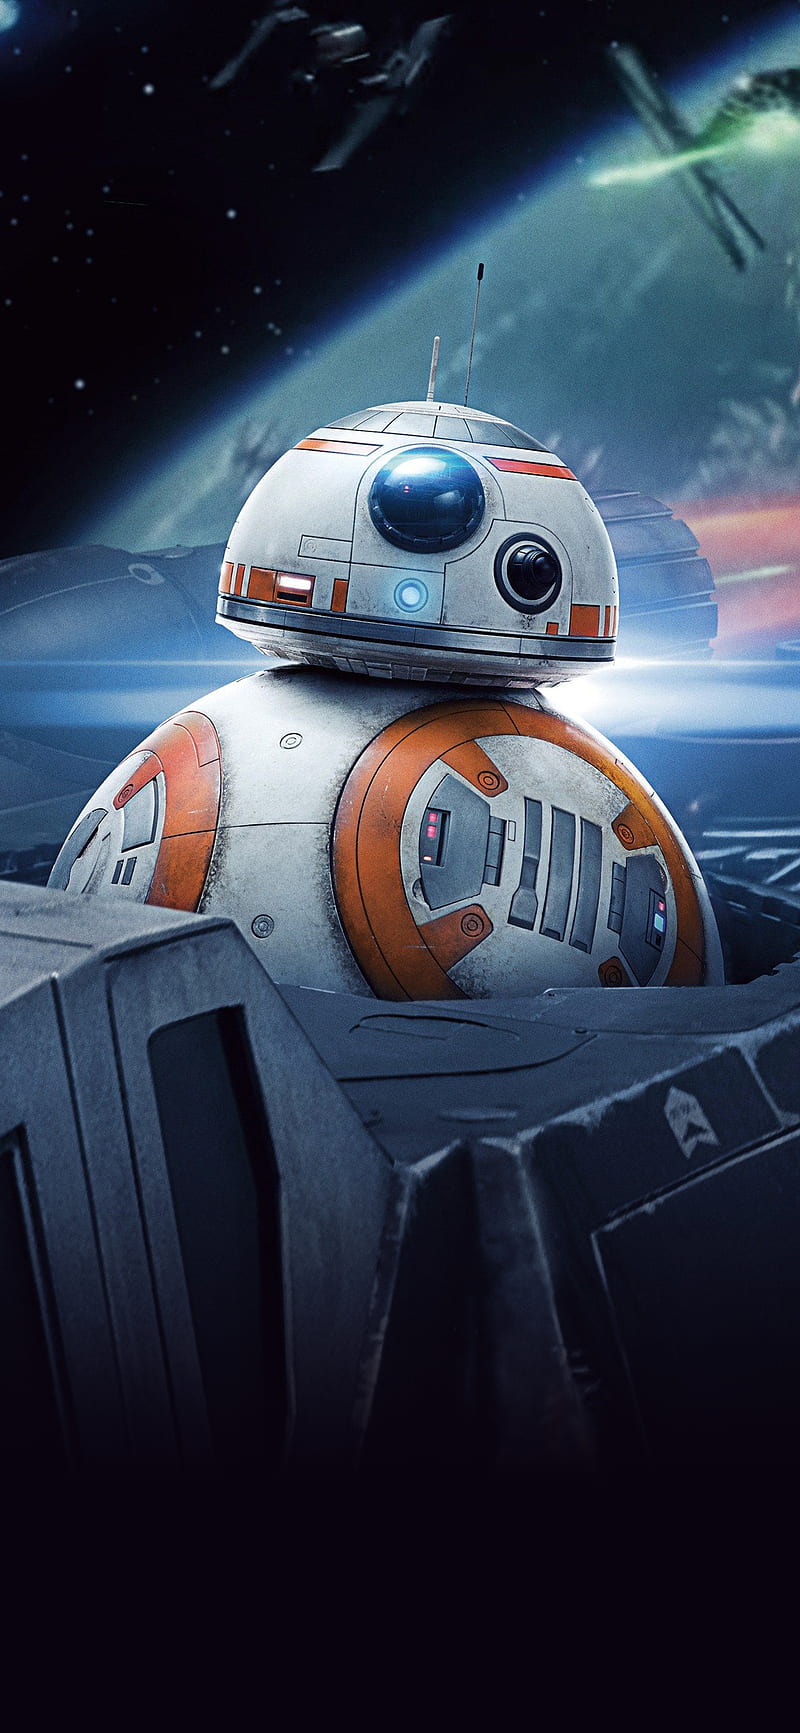 8 8 Droid Force Force Awakens Last Jedi Star Star Wars Wars Hd Mobile Wallpaper Peakpx